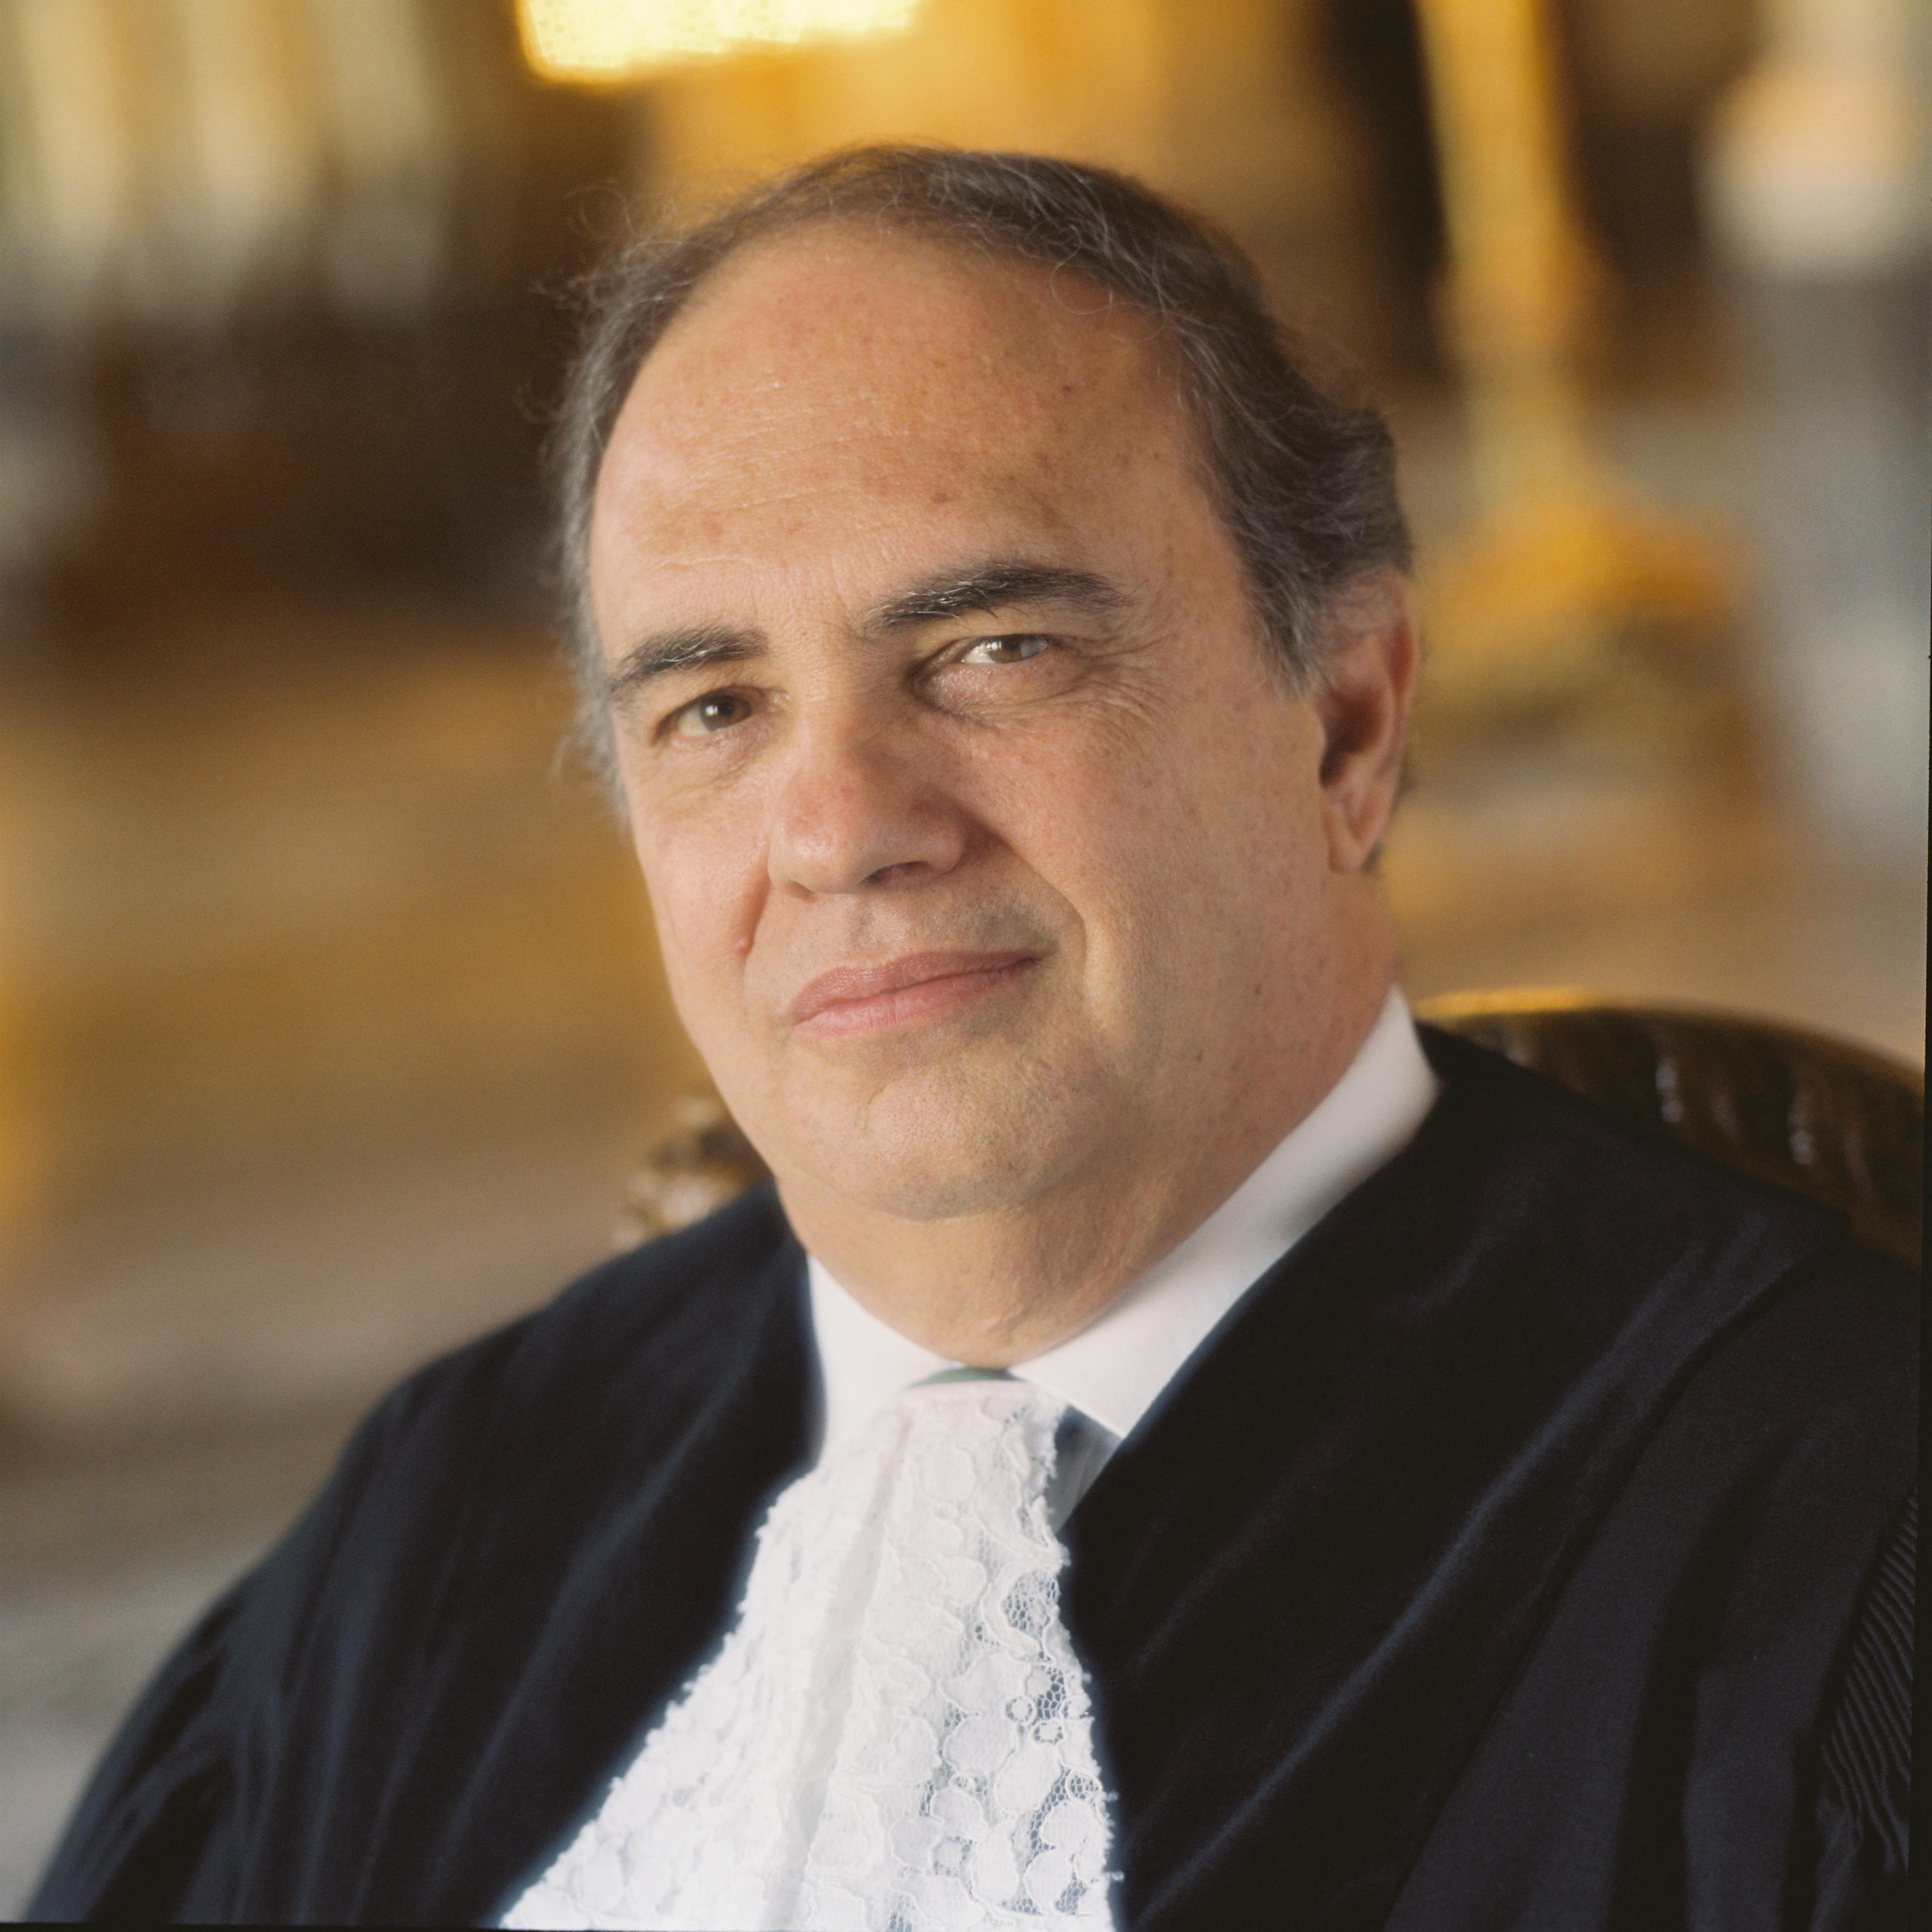 Judge Antonio Cancado Trinidade